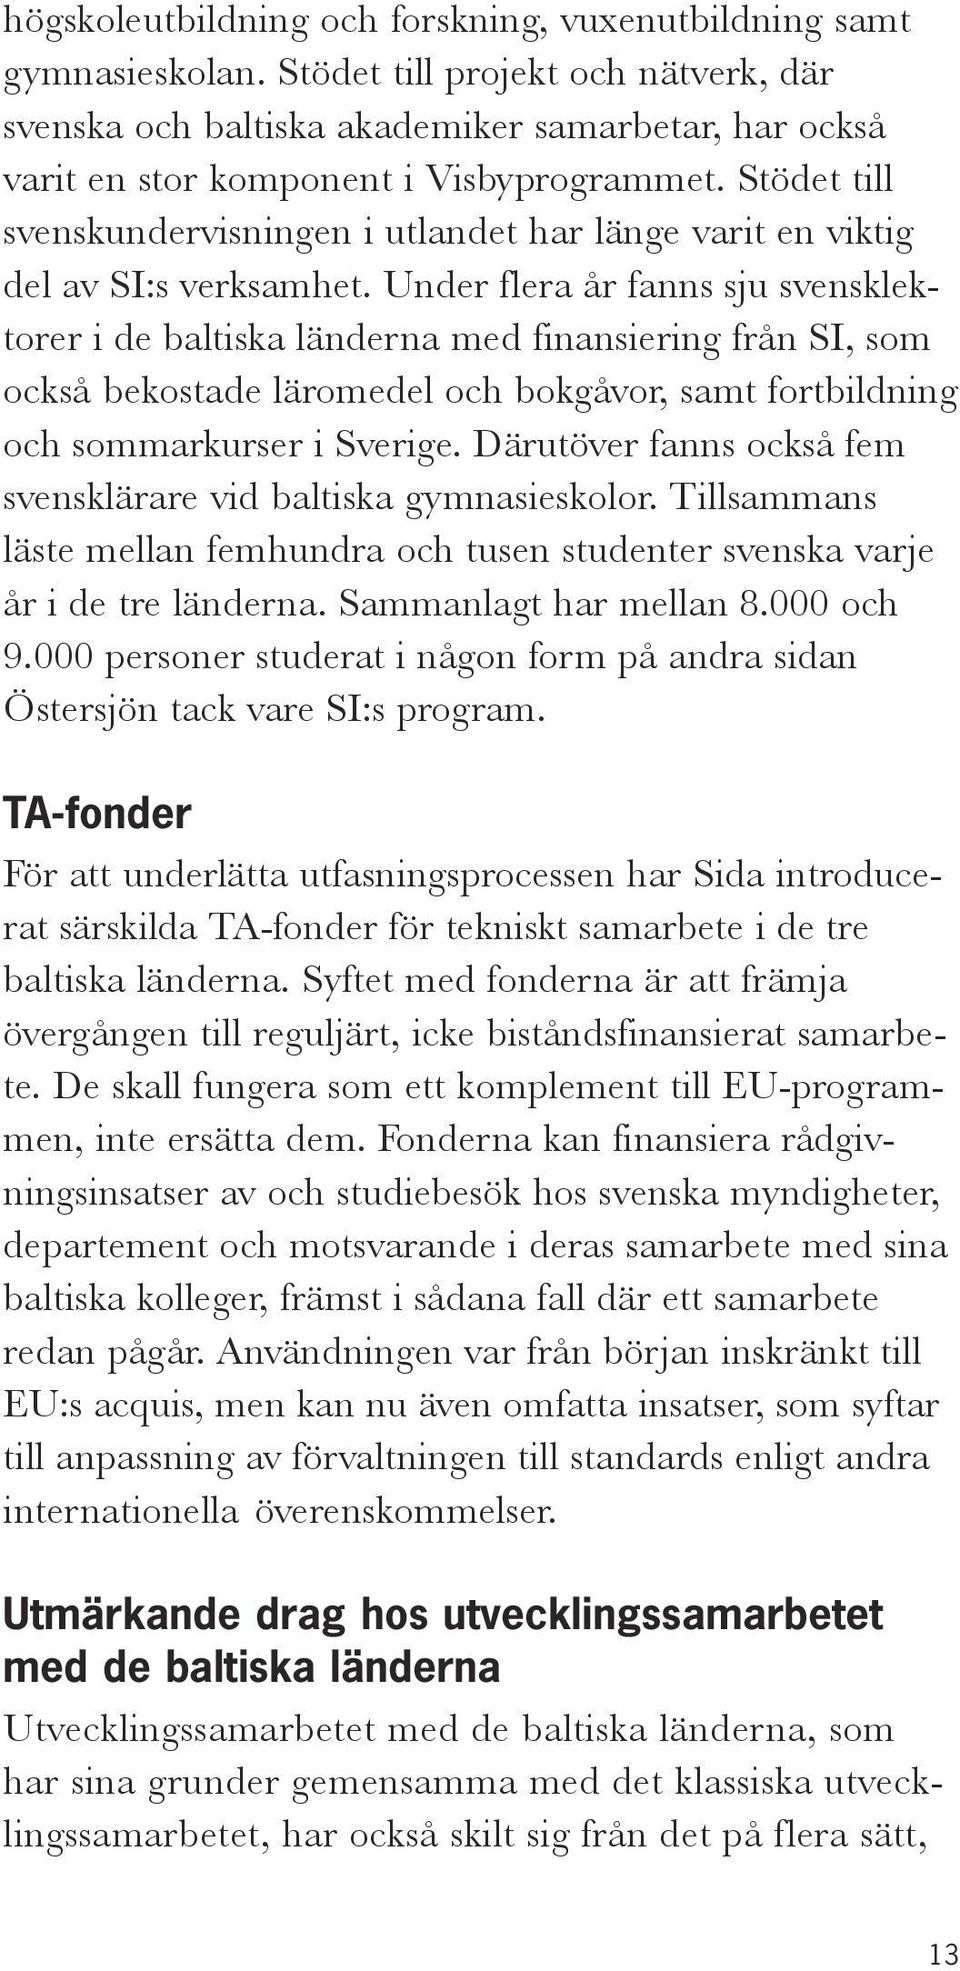 Stödet till svenskundervisningen i utlandet har länge varit en viktig del av SI:s verksamhet.